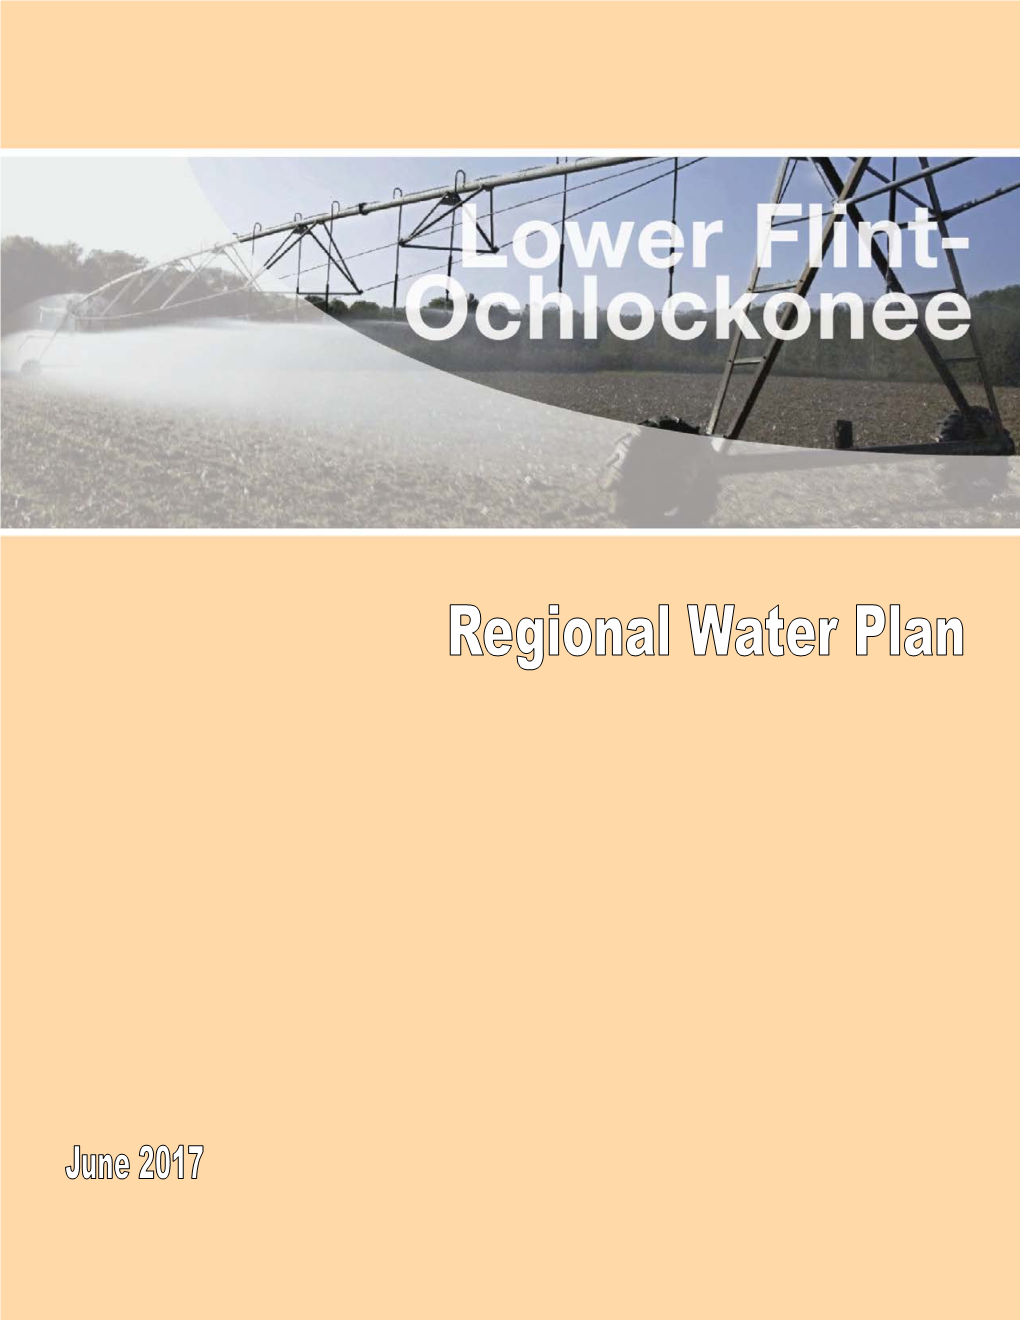 Lower Flint-Ochlockonee Regional Water Plan